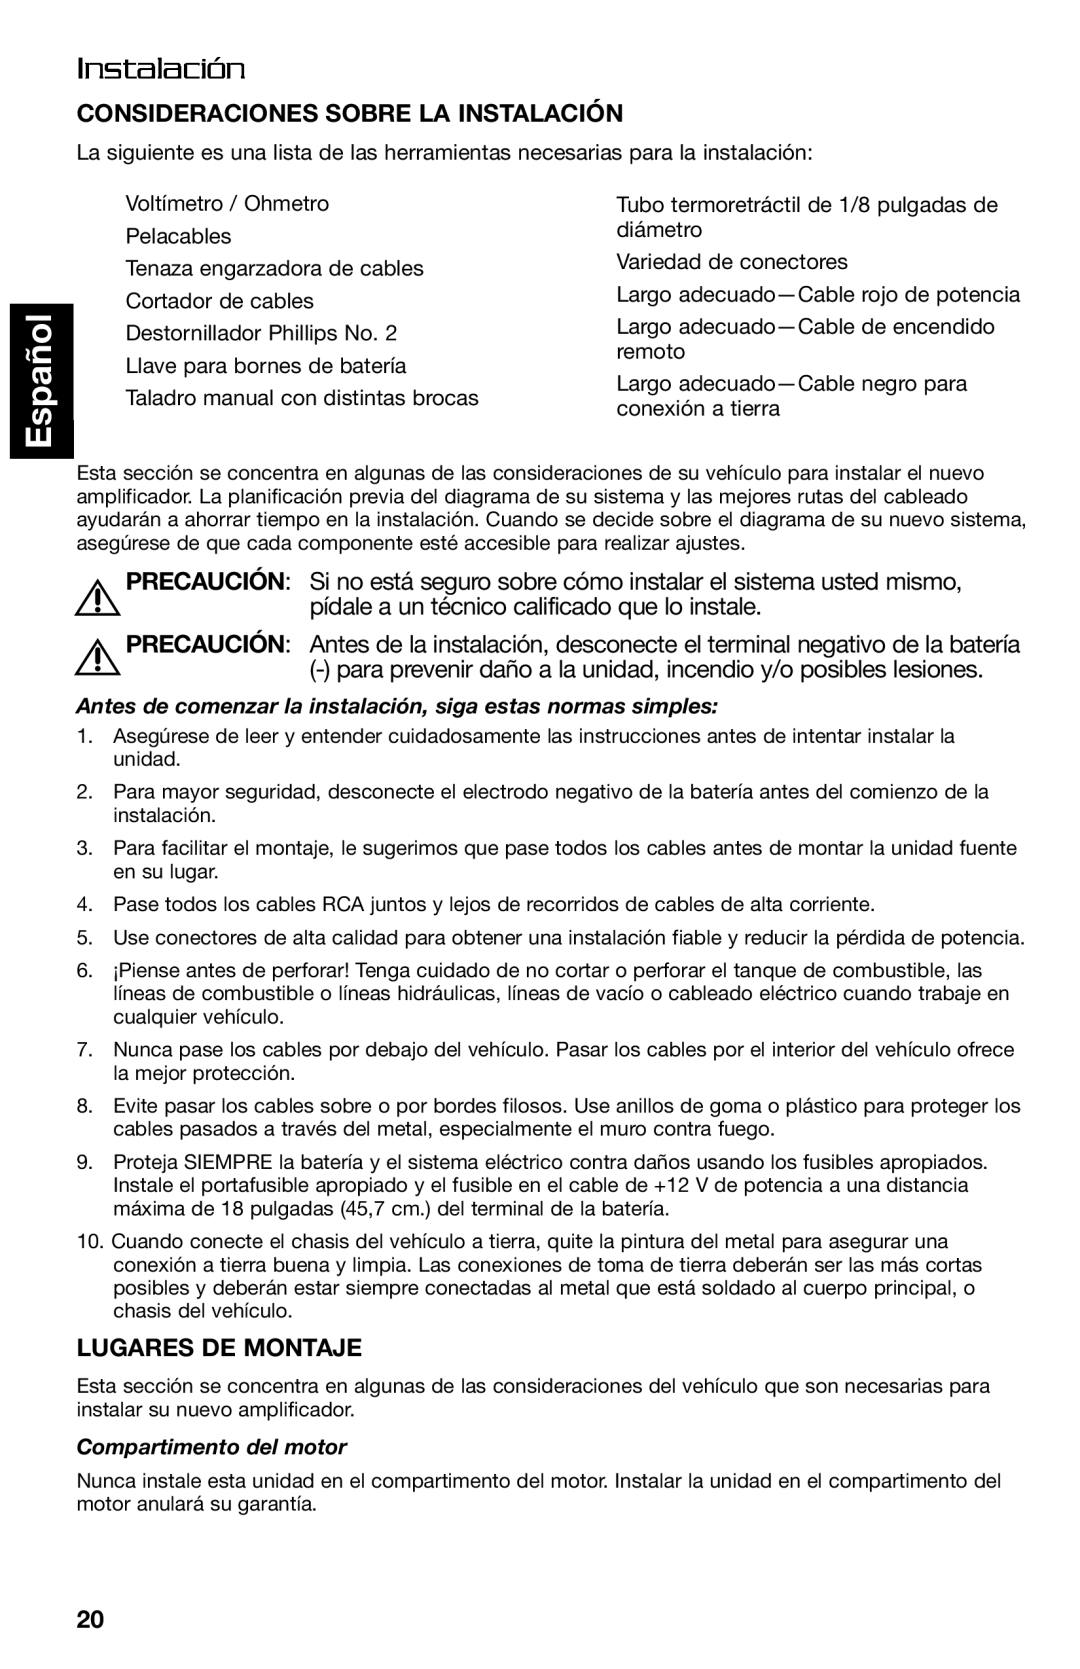 Lightning Audio FF250.1, FF150.2 manual Español, Consideraciones Sobre La Instalación, Precaución, Lugares De Montaje 